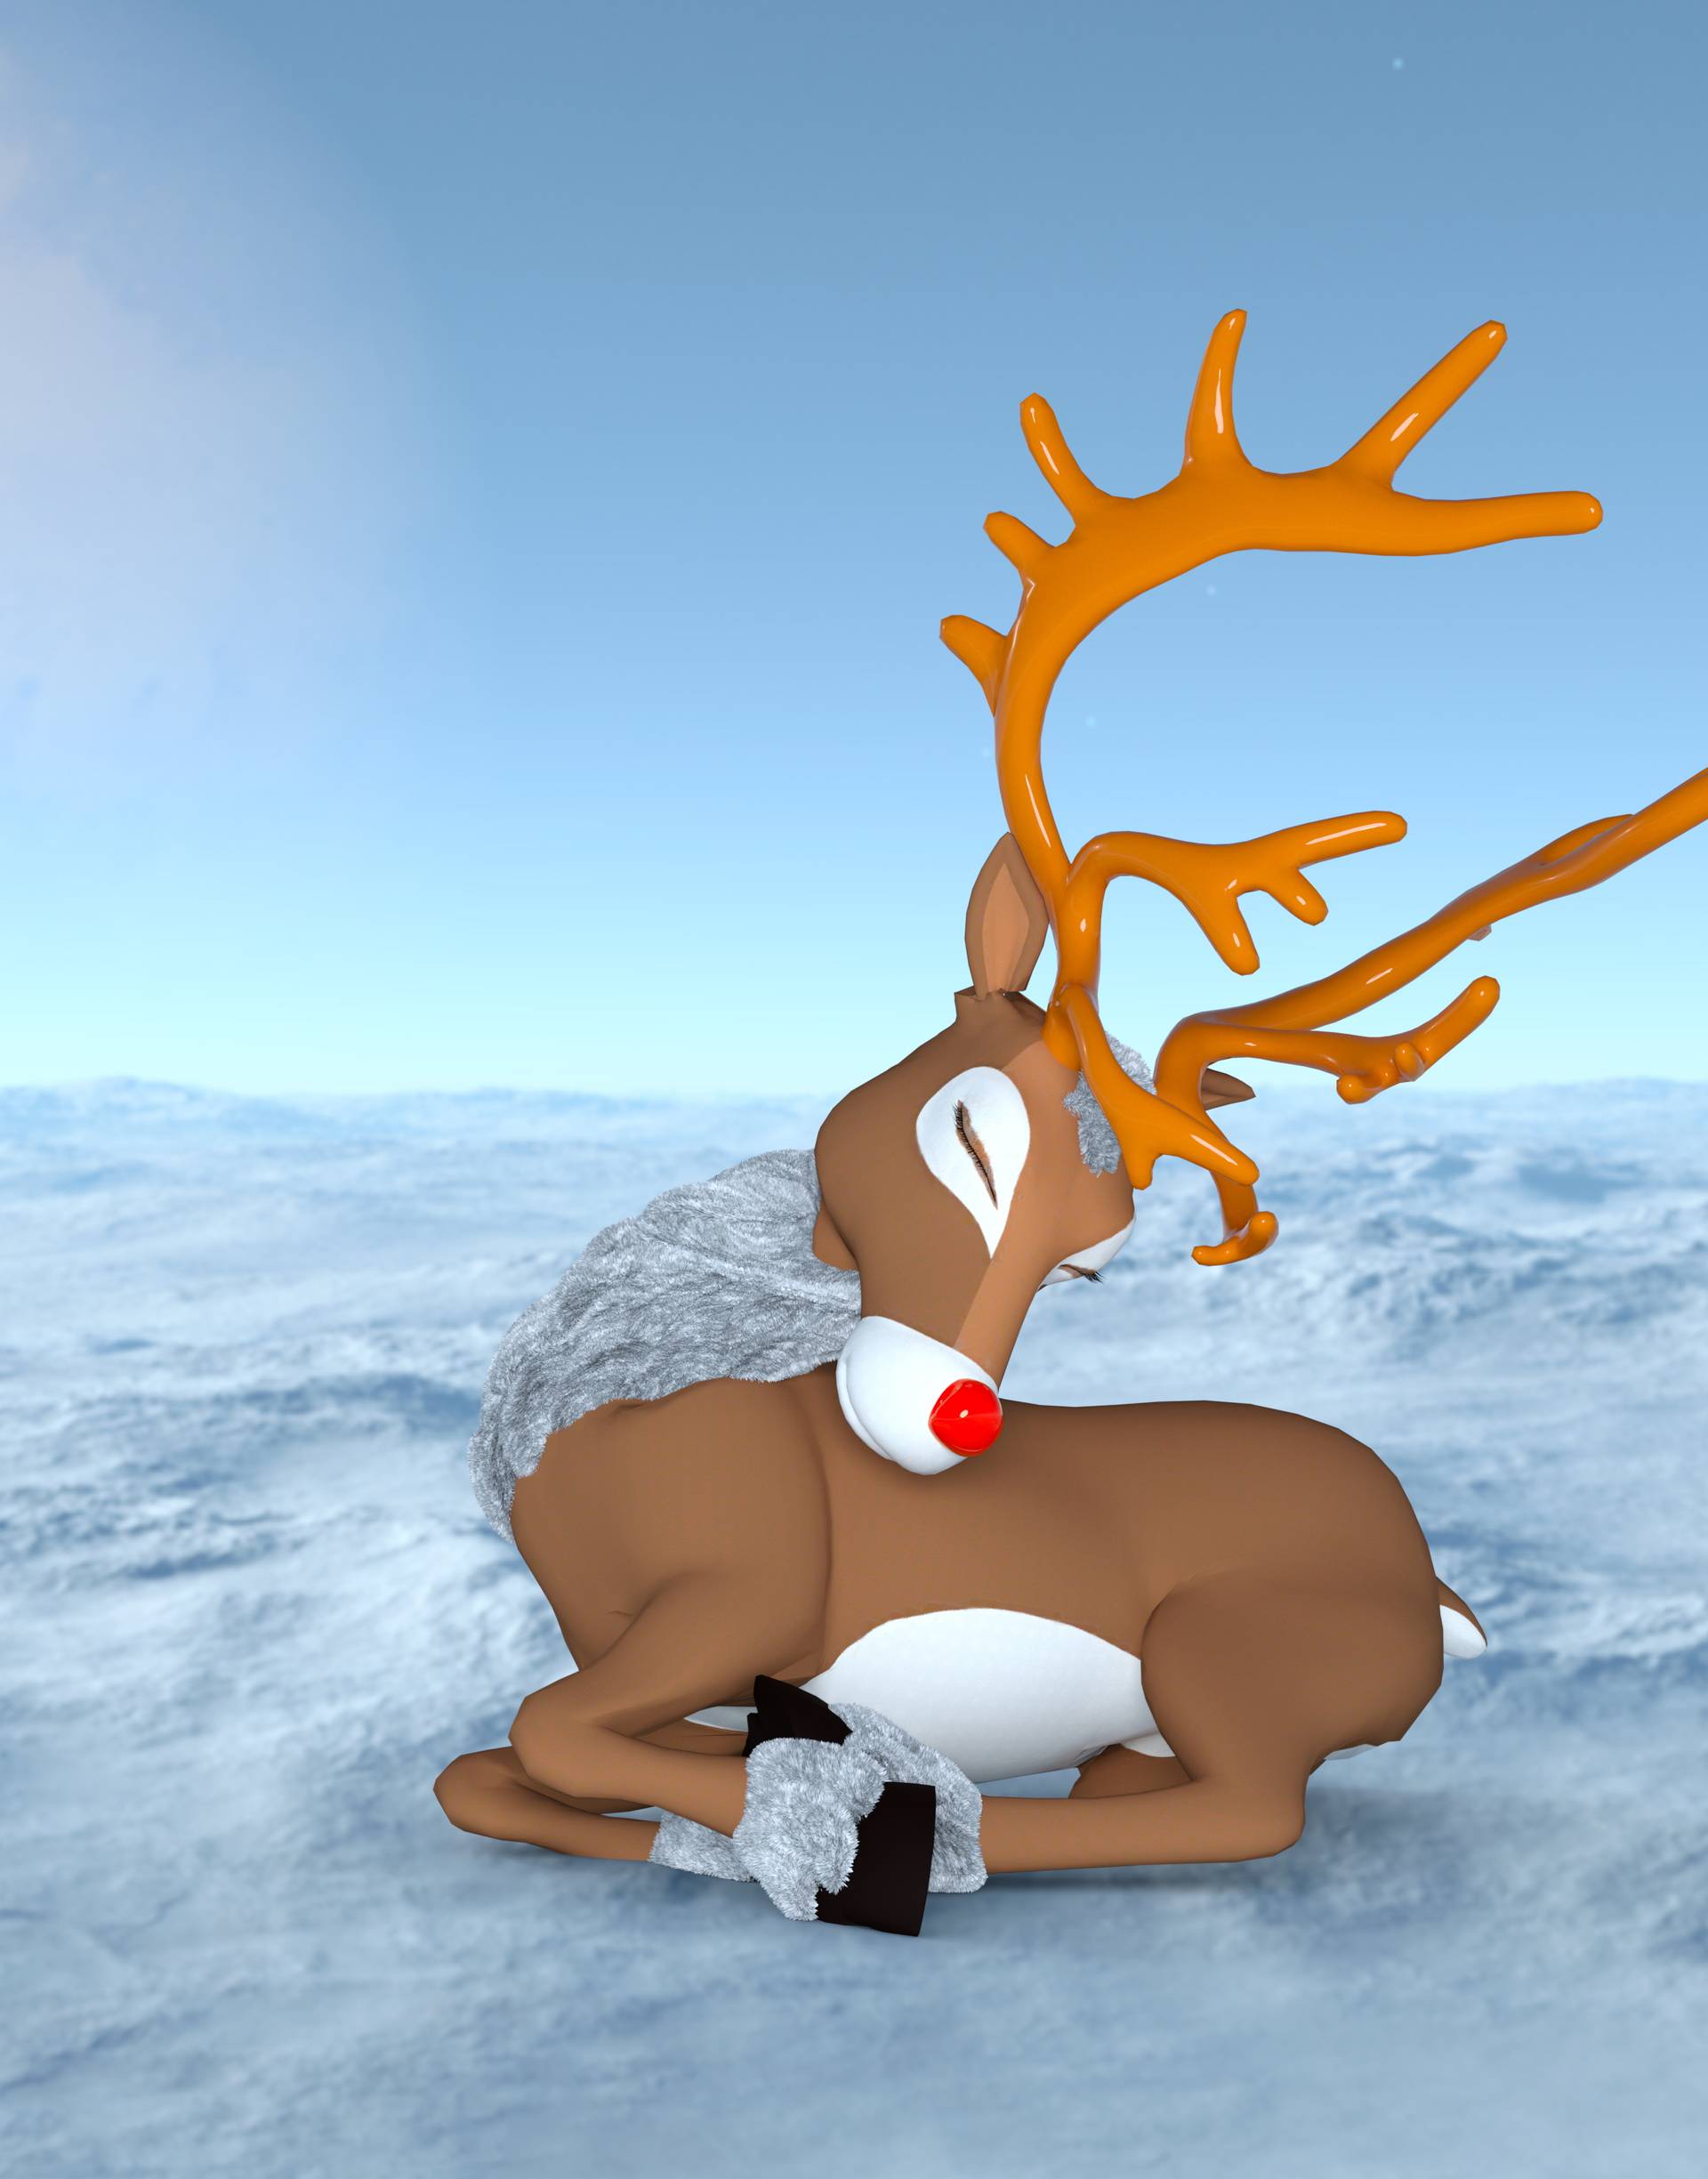 Rudolf je bio najslabiji sob, a proslavio se zbog svoje 'mane'